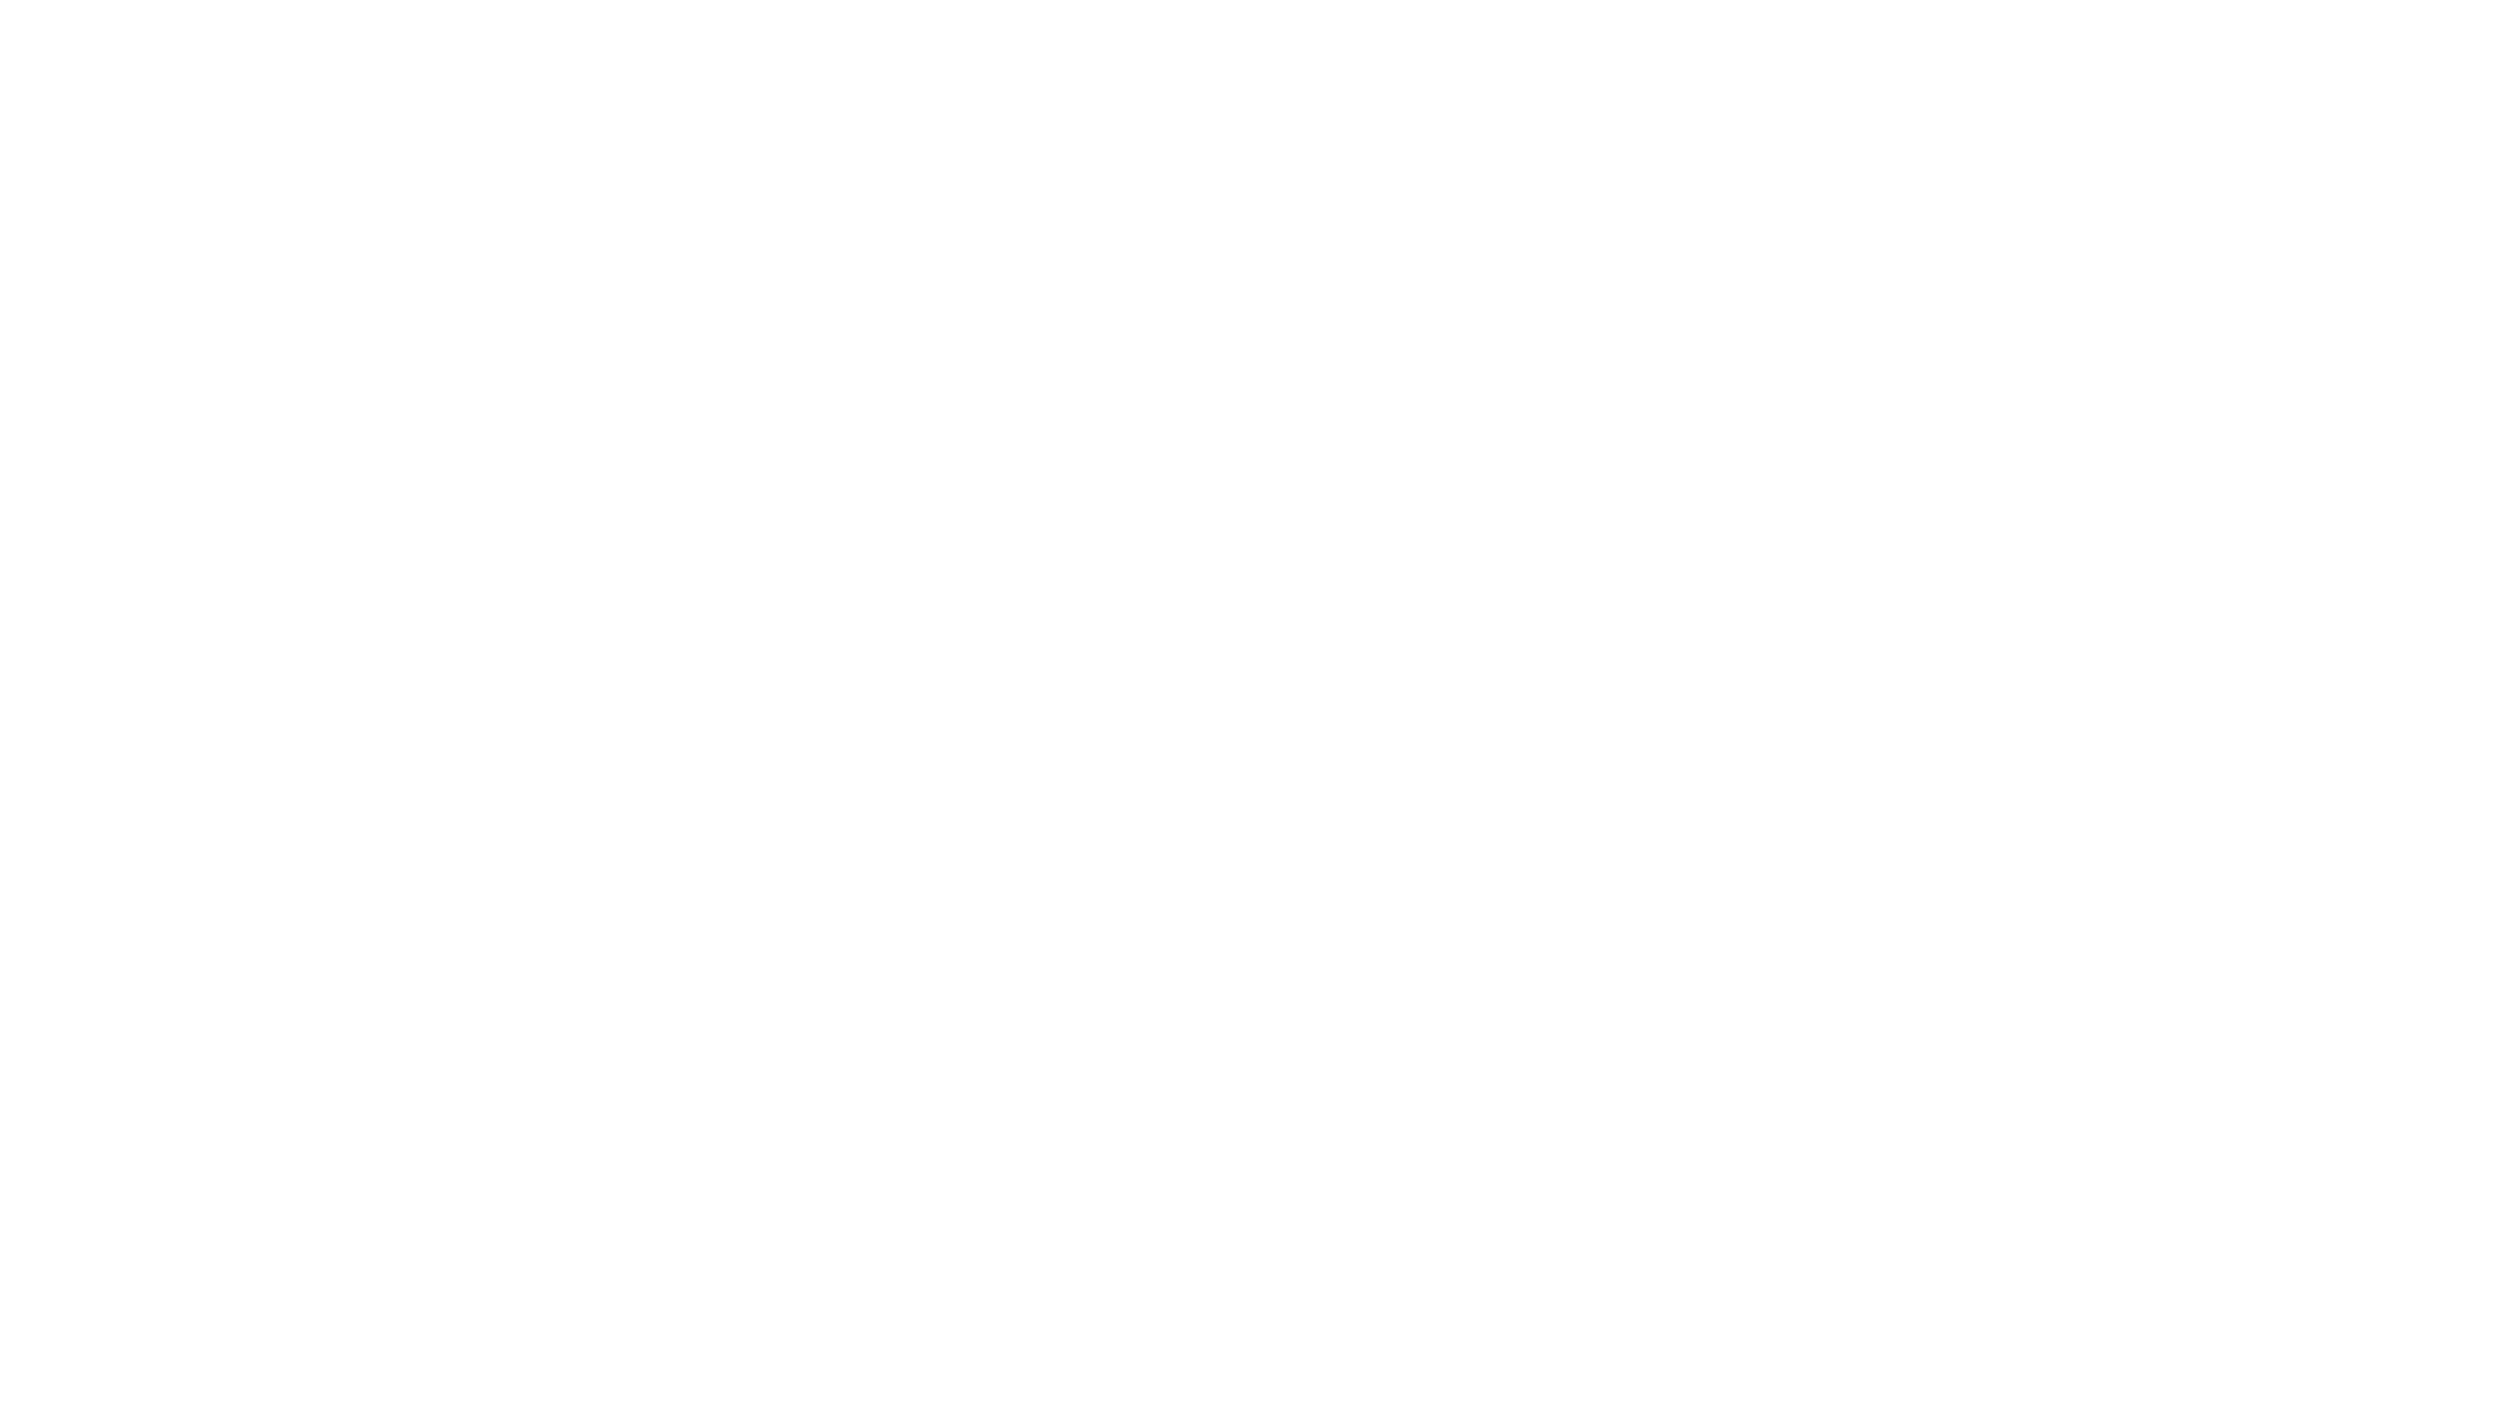 C.M. Mockbee